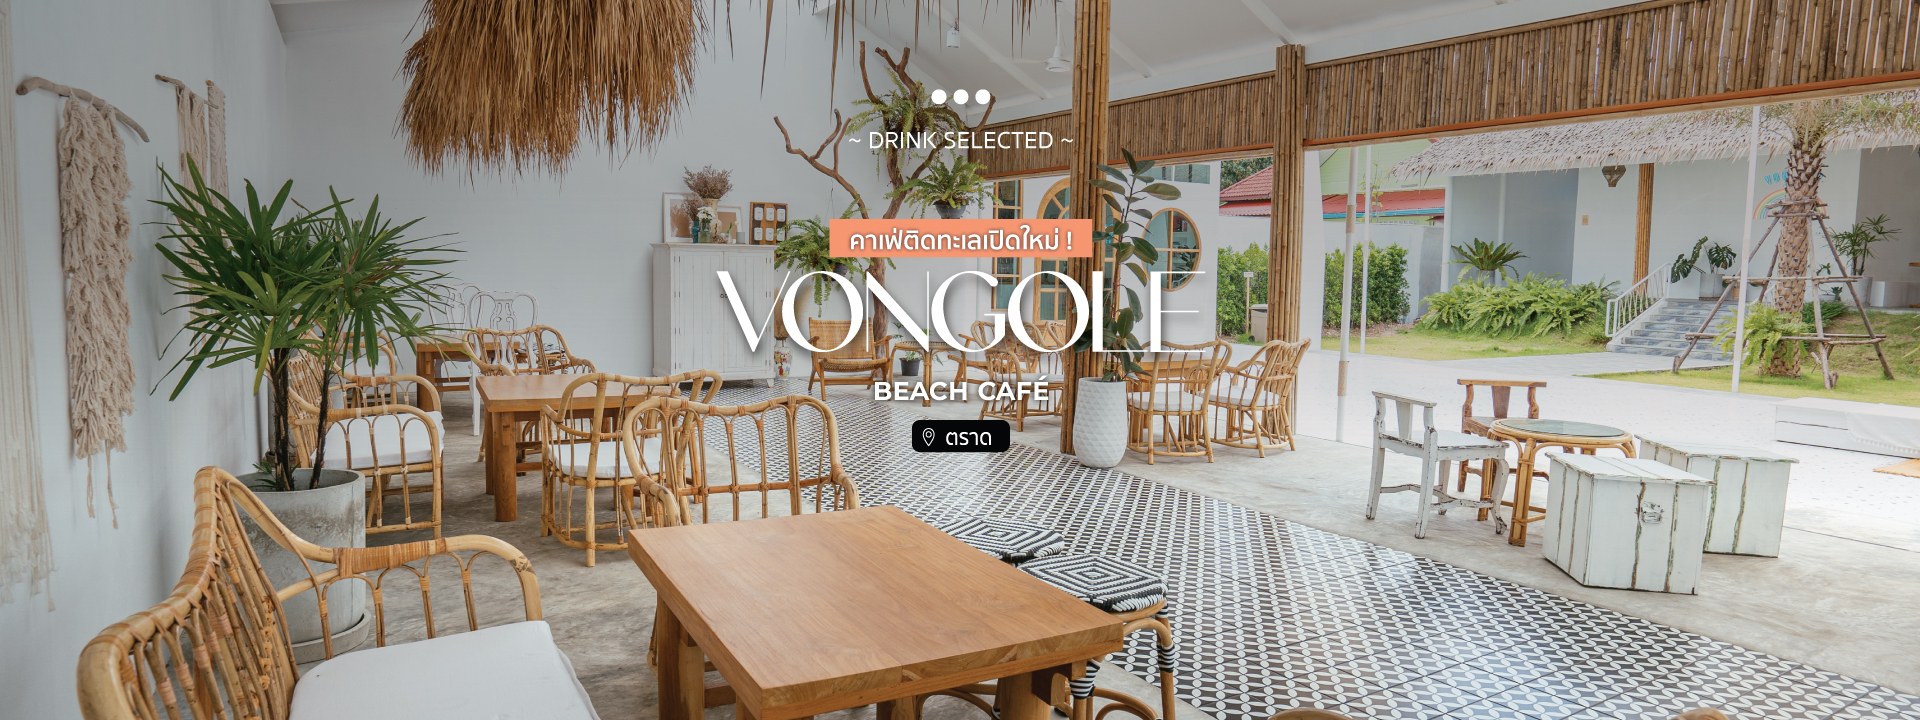 Vongole beach café คาเฟ่ติดทะเลเปิดใหม่ !